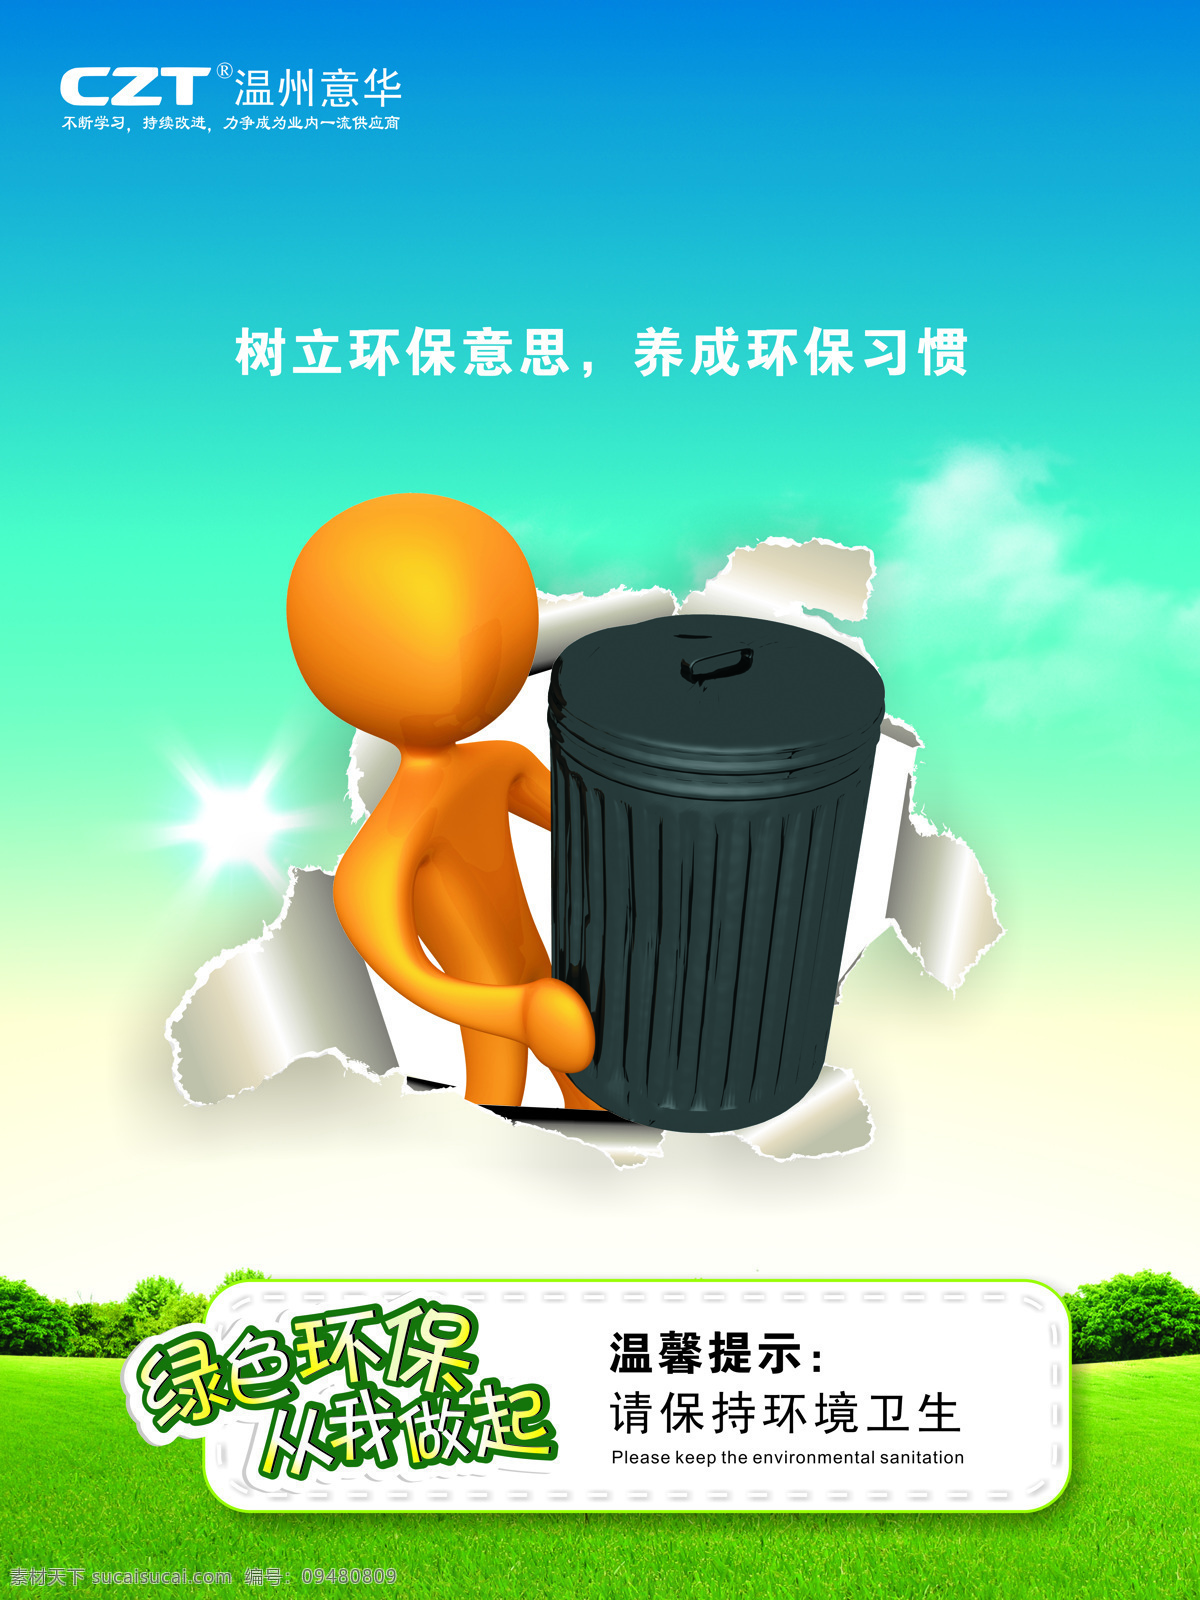 环境保护 环保海报 卡通人物 垃圾桶 蓝天草地 企业文化 招贴设计 回收垃圾 环保公益海报